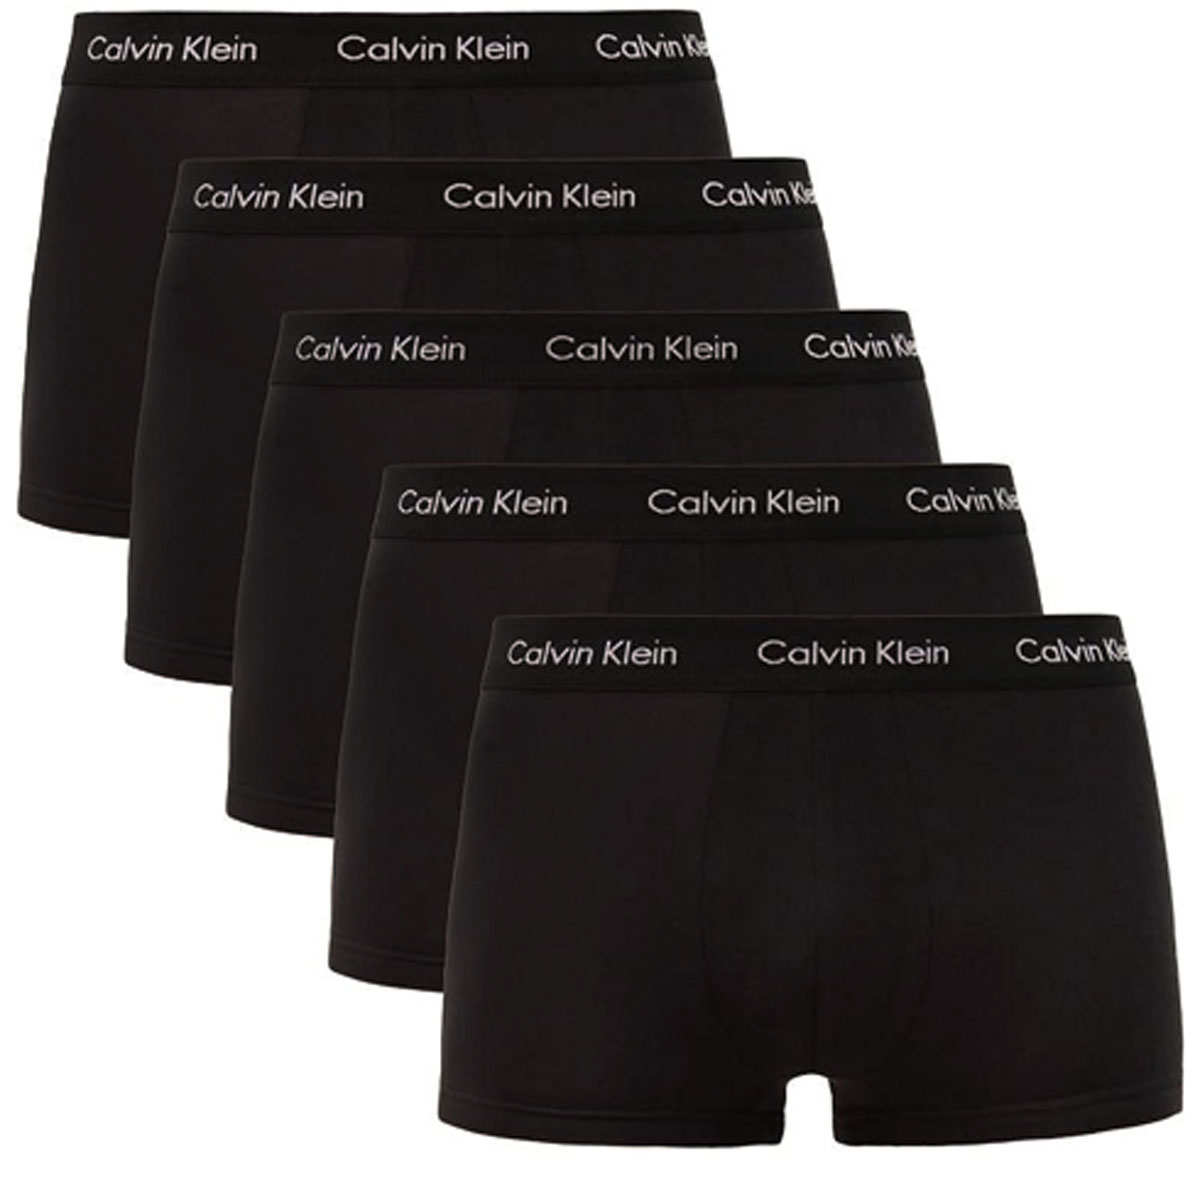 Calvin Klein Boxershorts 5-pack zwart low rise